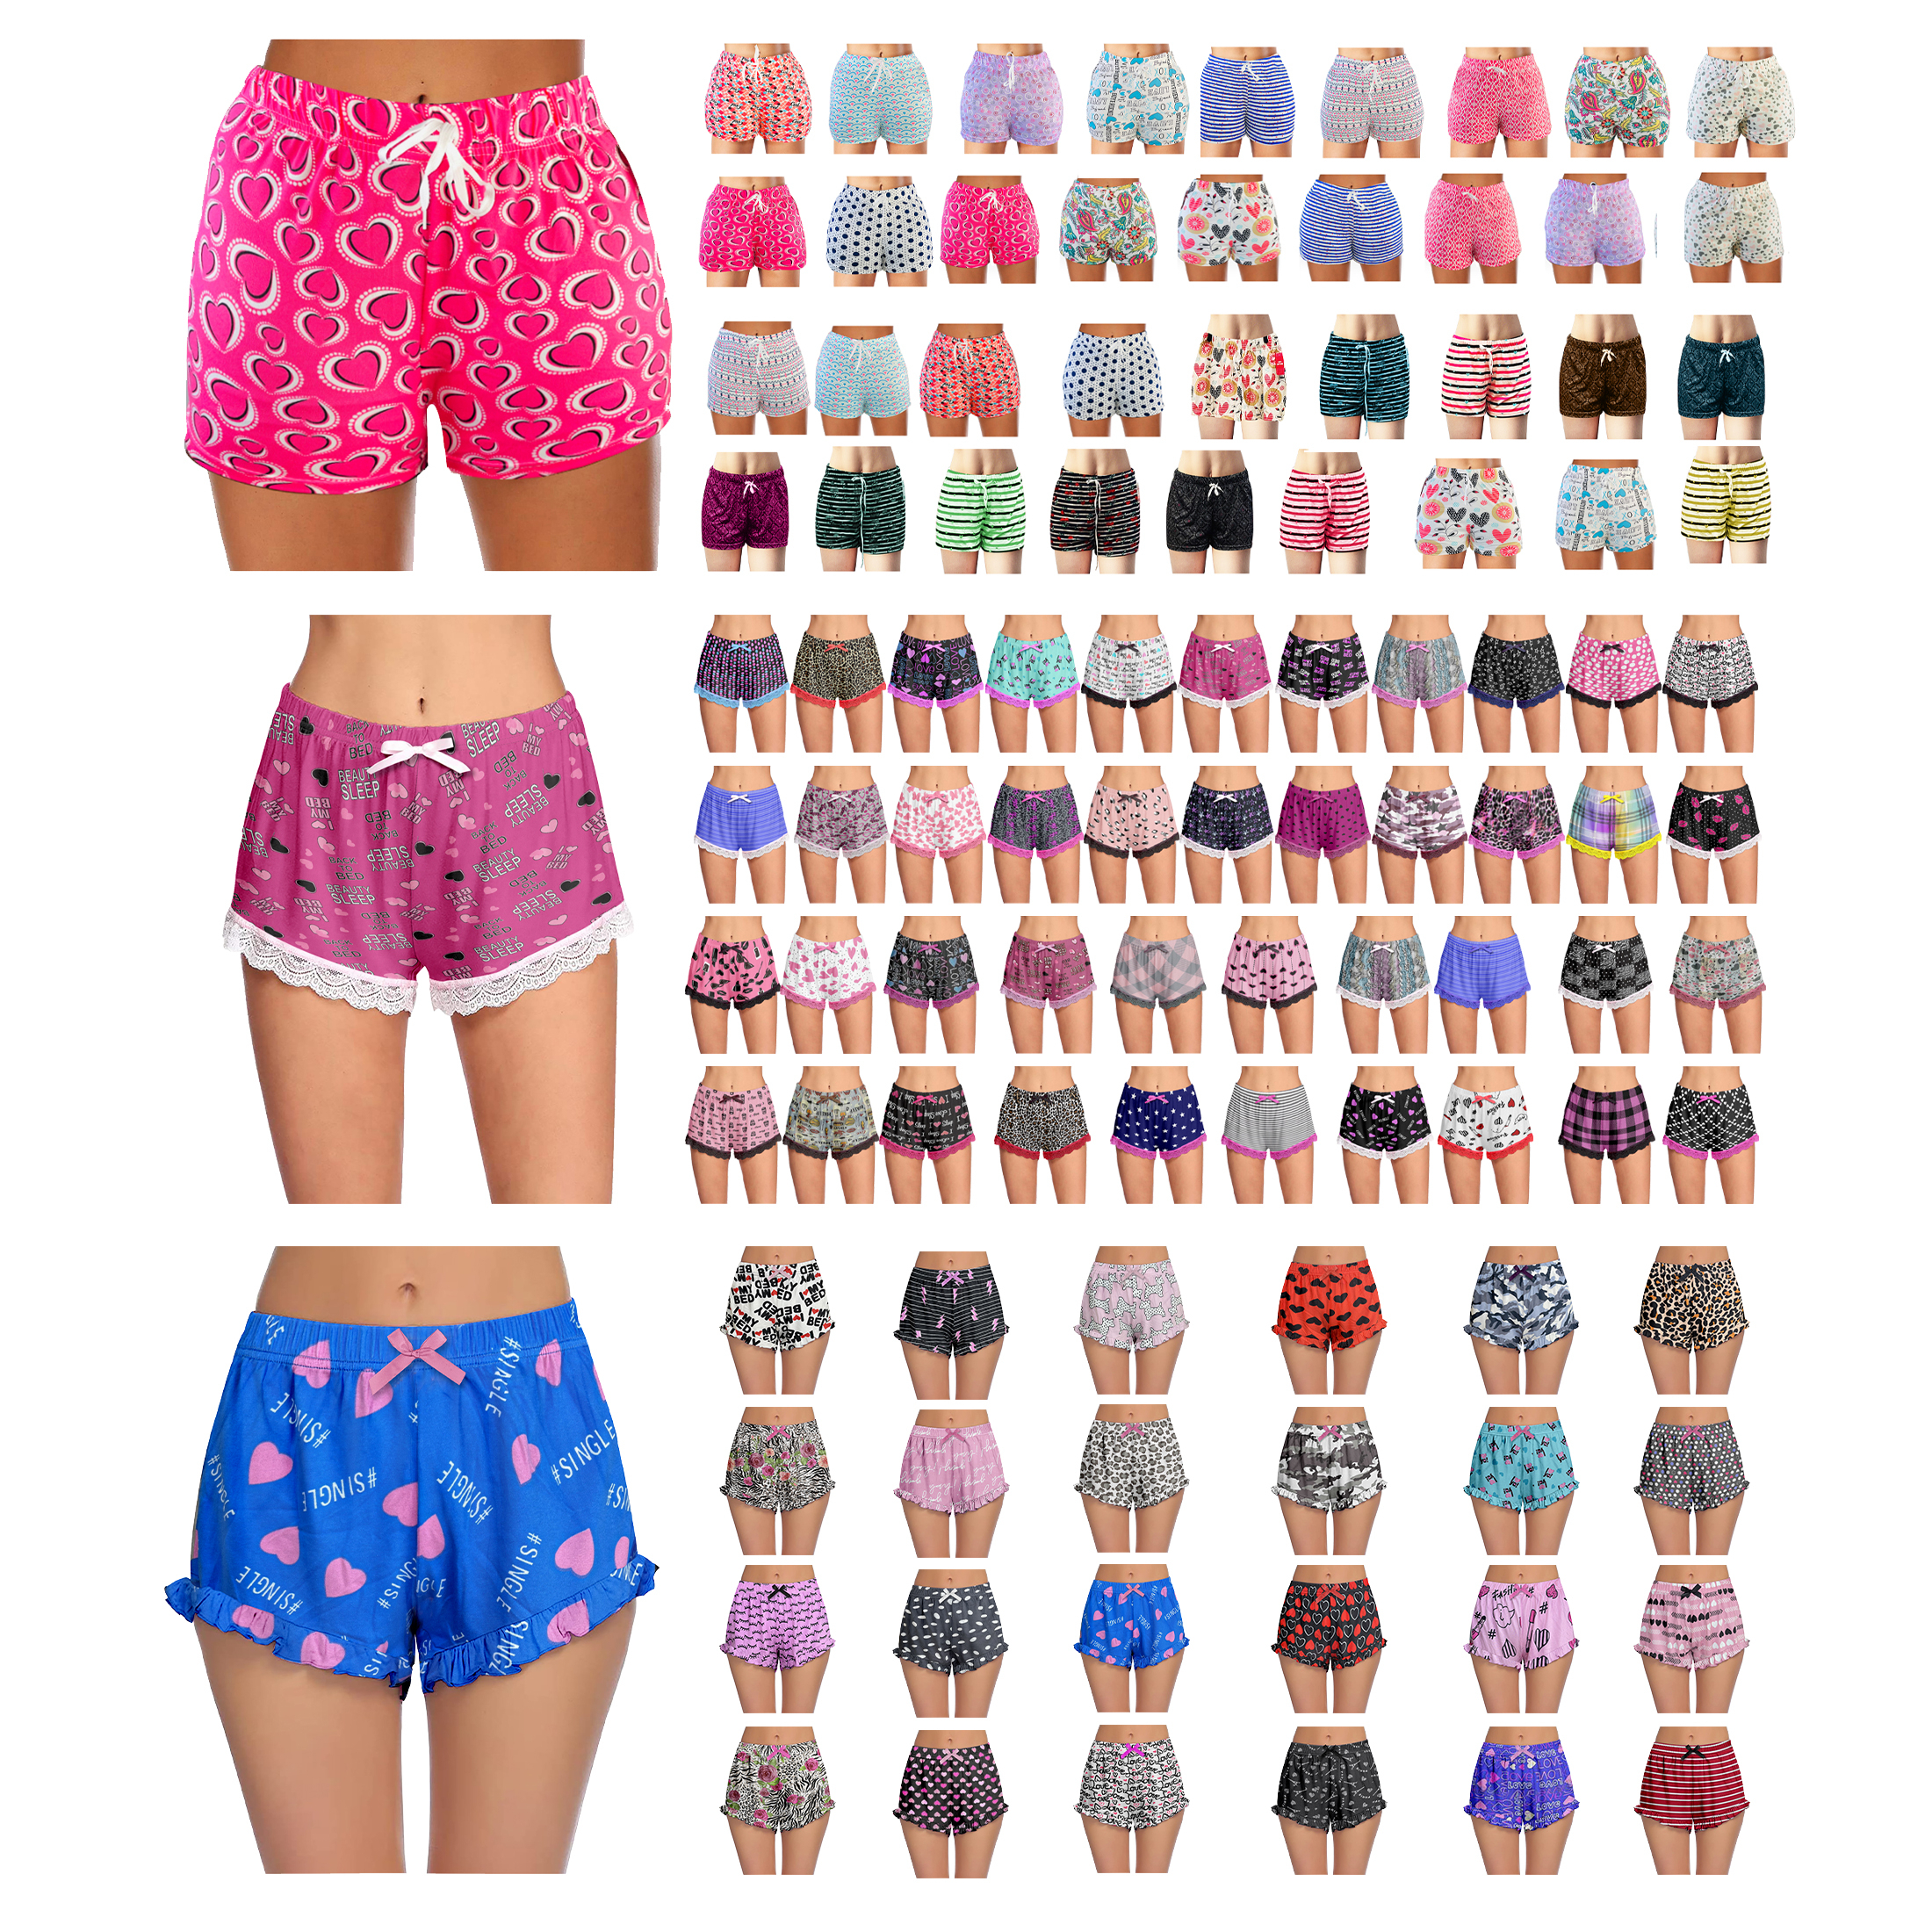 3-Pack: Women's Soft Comfy Printed Lounge Sleep Pajama Shorts - Plain Hem, Medium